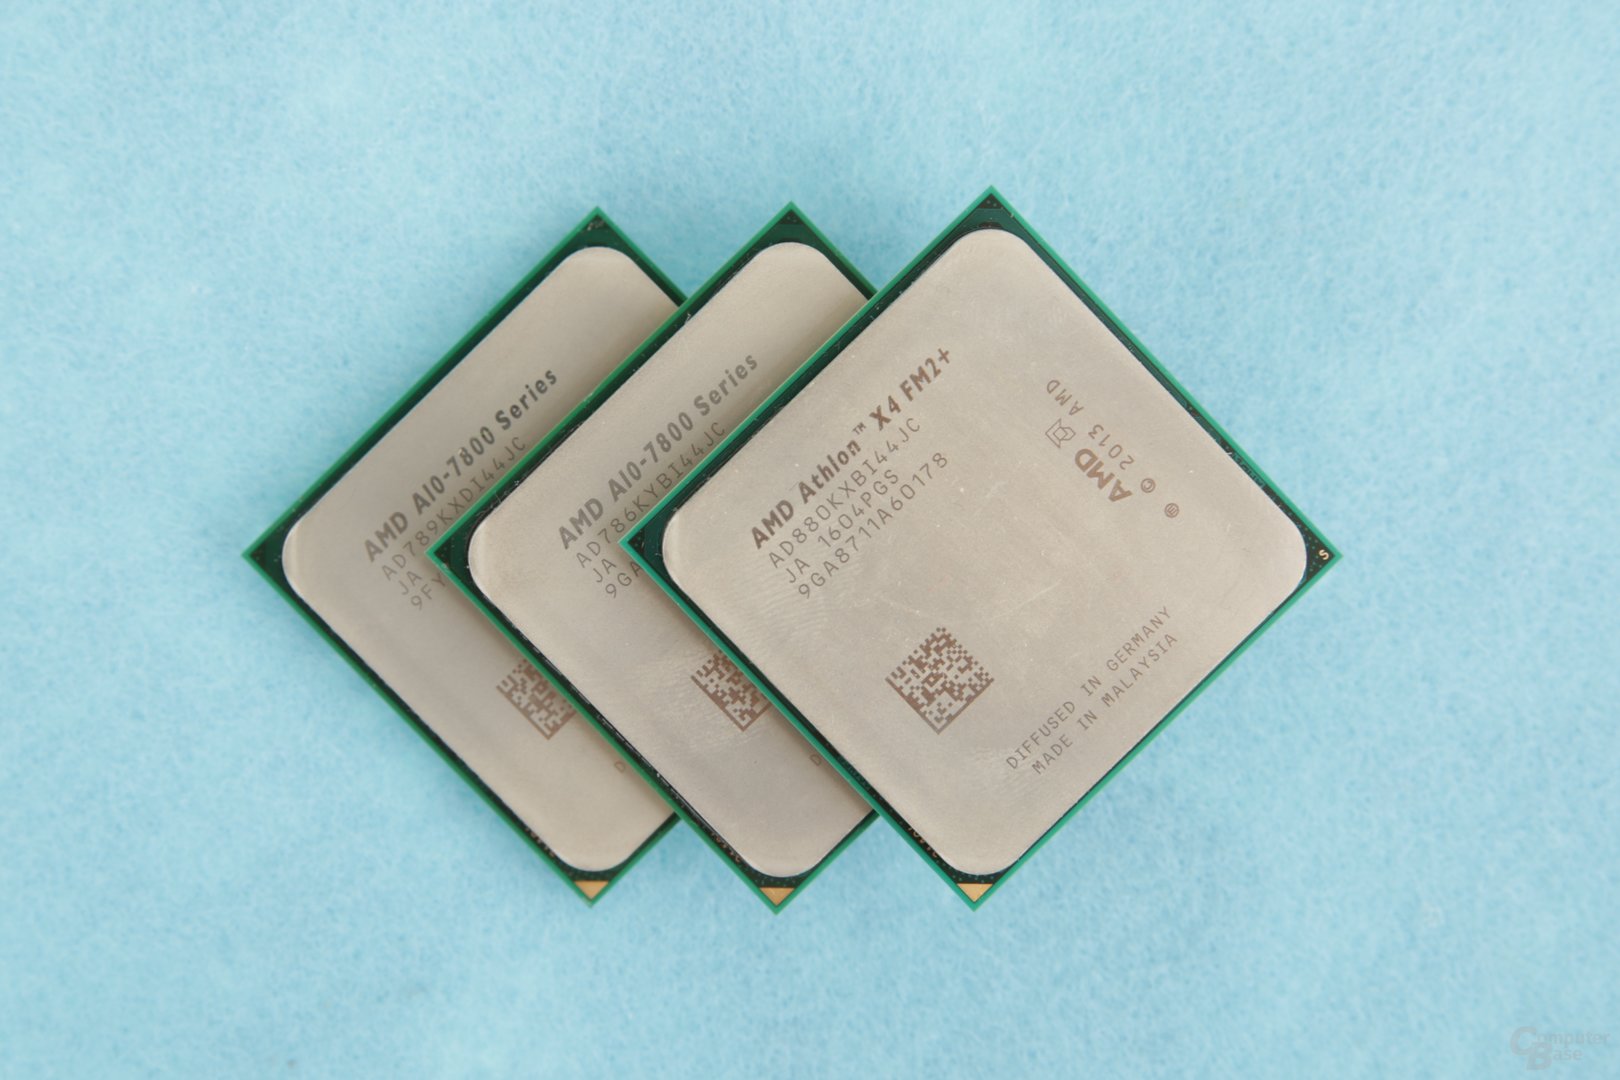 AMD A10-7890K, A10-7860K und Athlon X4 880K